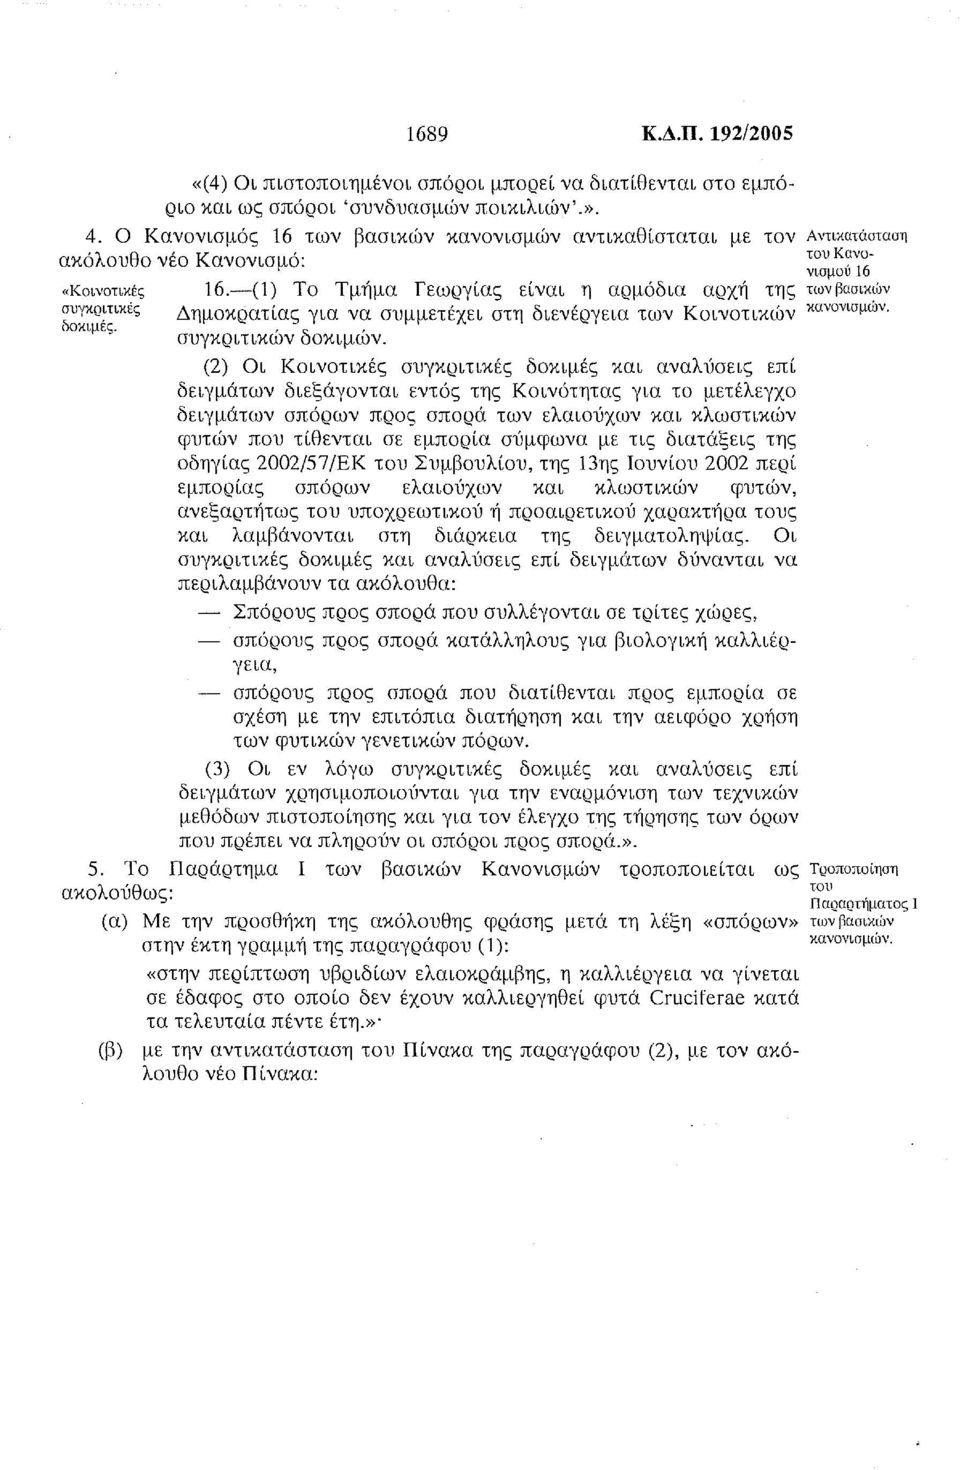 -(1) Το Τμήμα Γεωργίας είναι η αρμόδια αρχή της των βασικιον συγκριτικές Δημοκρατίας για να συμμετέχει στη διενέργεια των Κοινοτικών κανονισμών. δοκιμές. συγκριτικών δοκιμών.